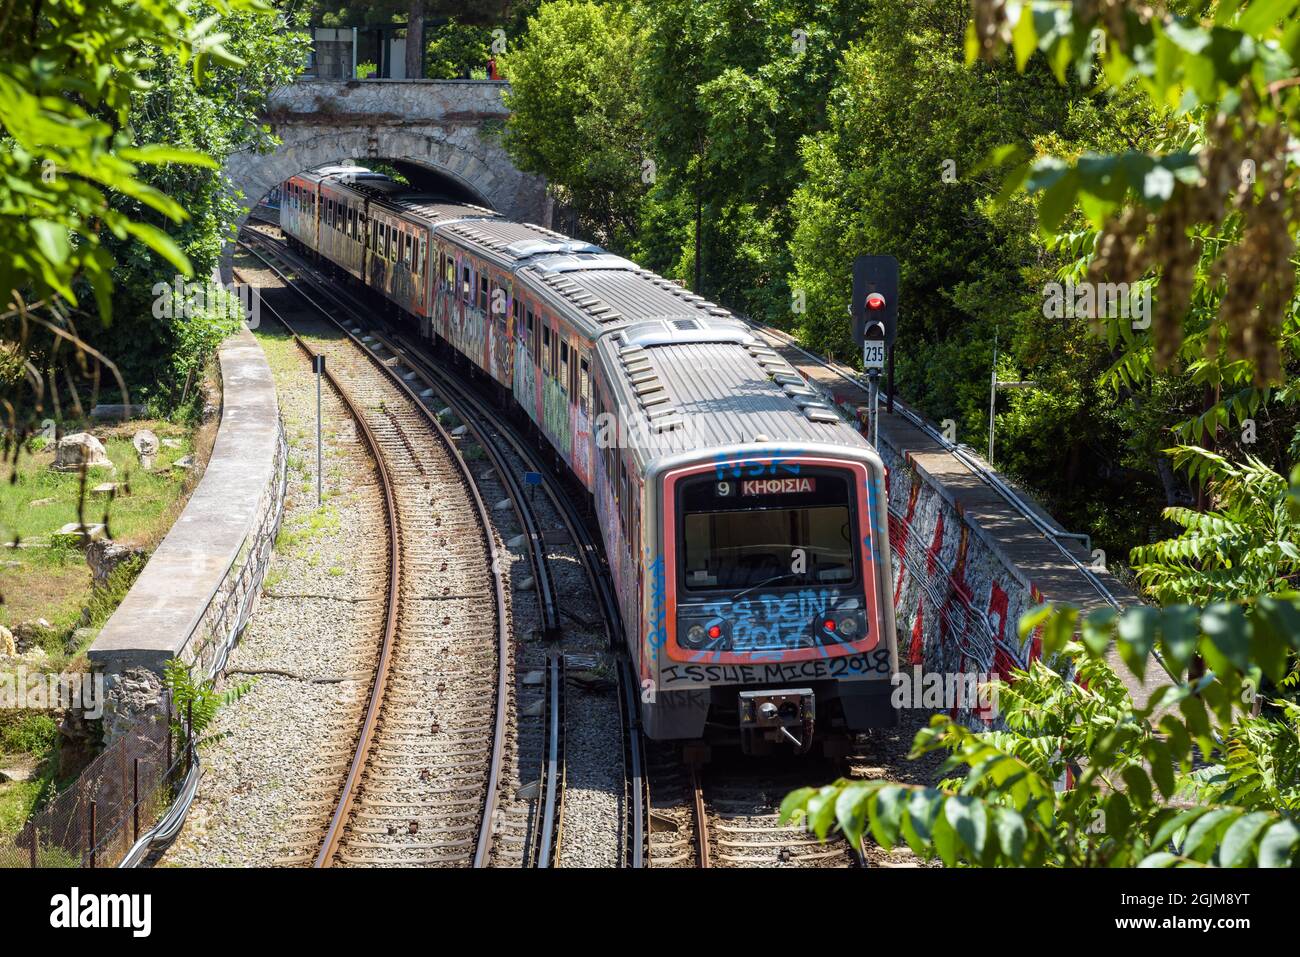 U-Bahn in Athen, Griechenland, Europa. Eisenbahnwagen mit Graffiti auf der Straße gemalt, U-Bahn-Straße in der Innenstadt von Athen im Sommer im Freien. Konzept von Stockfoto